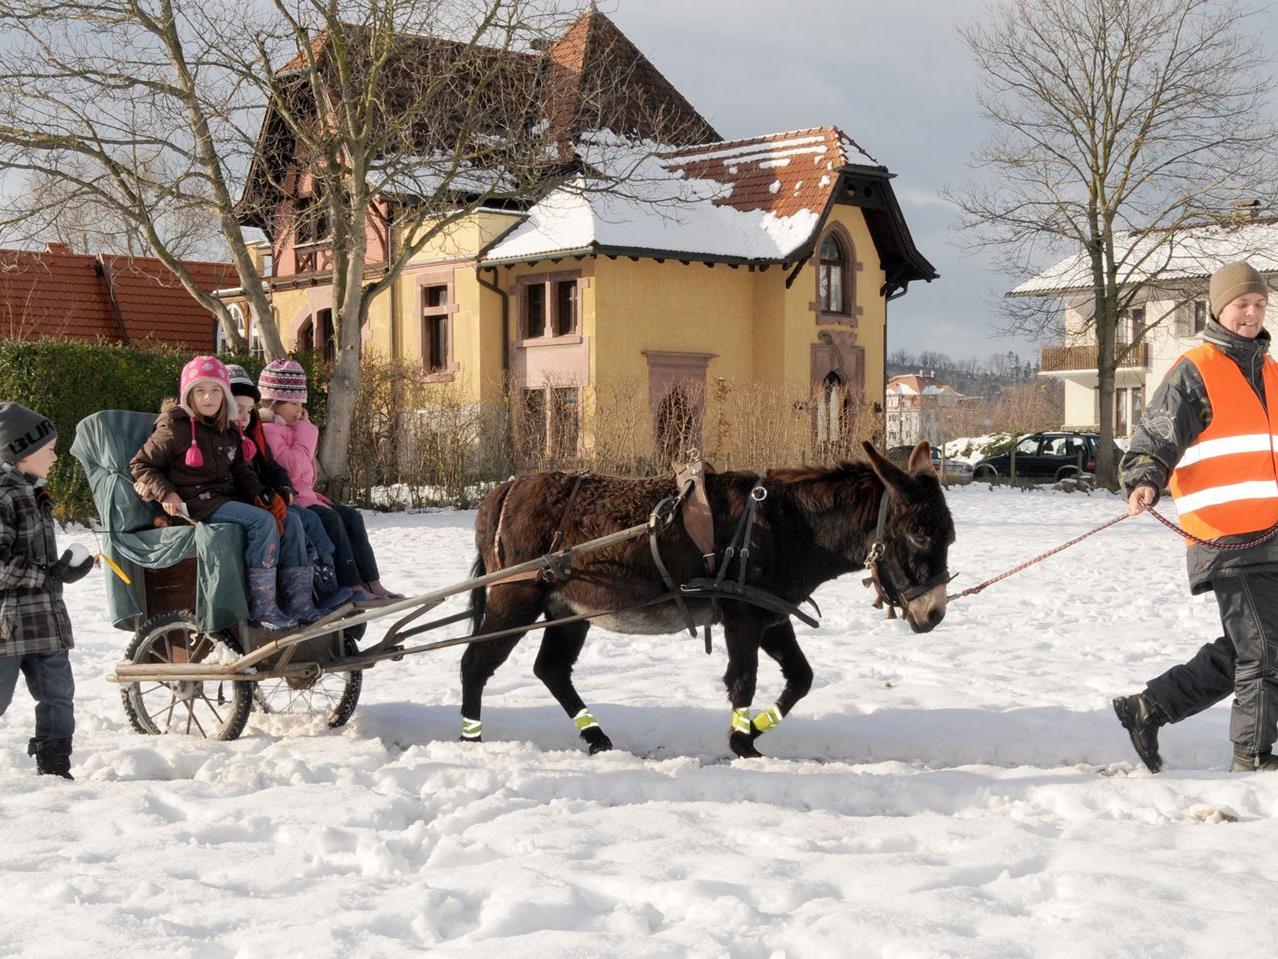 Ausfahrt im Eselwagen beim Weihnachtsmarkt in Gaißau am Sonntag, den 16. Dezember